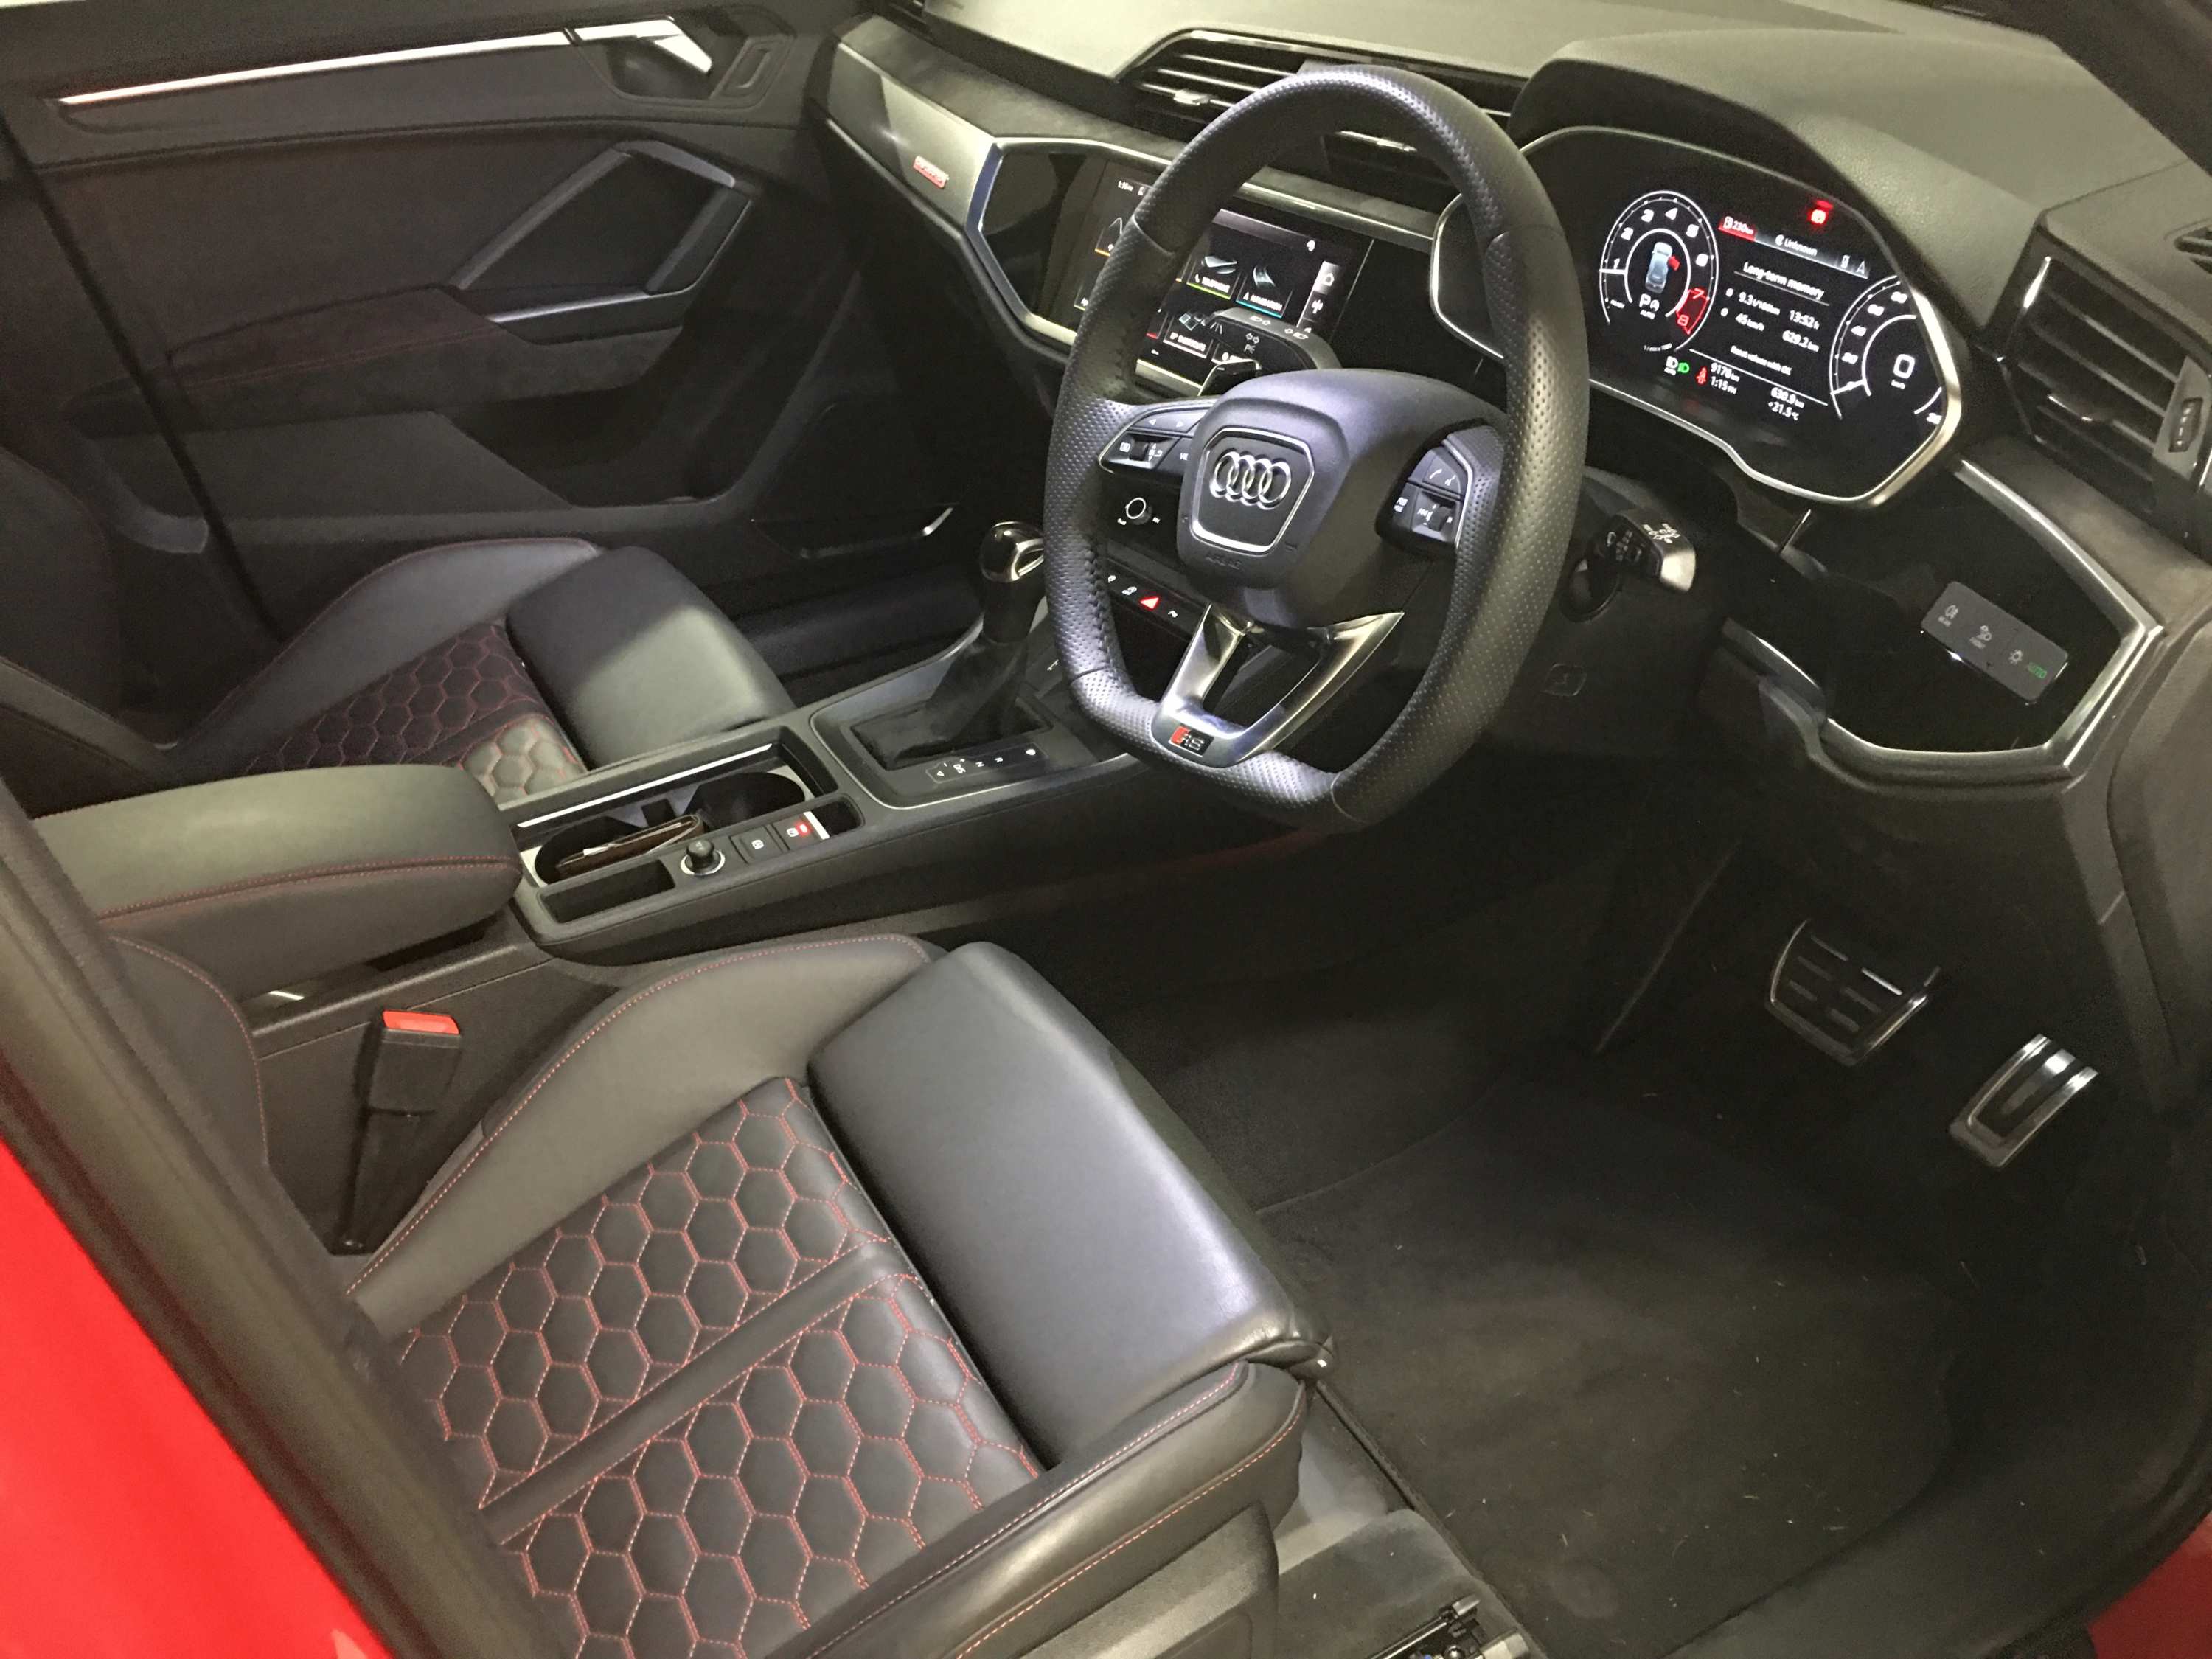 2021 Audi RS Q3 Quattro SUV front seats